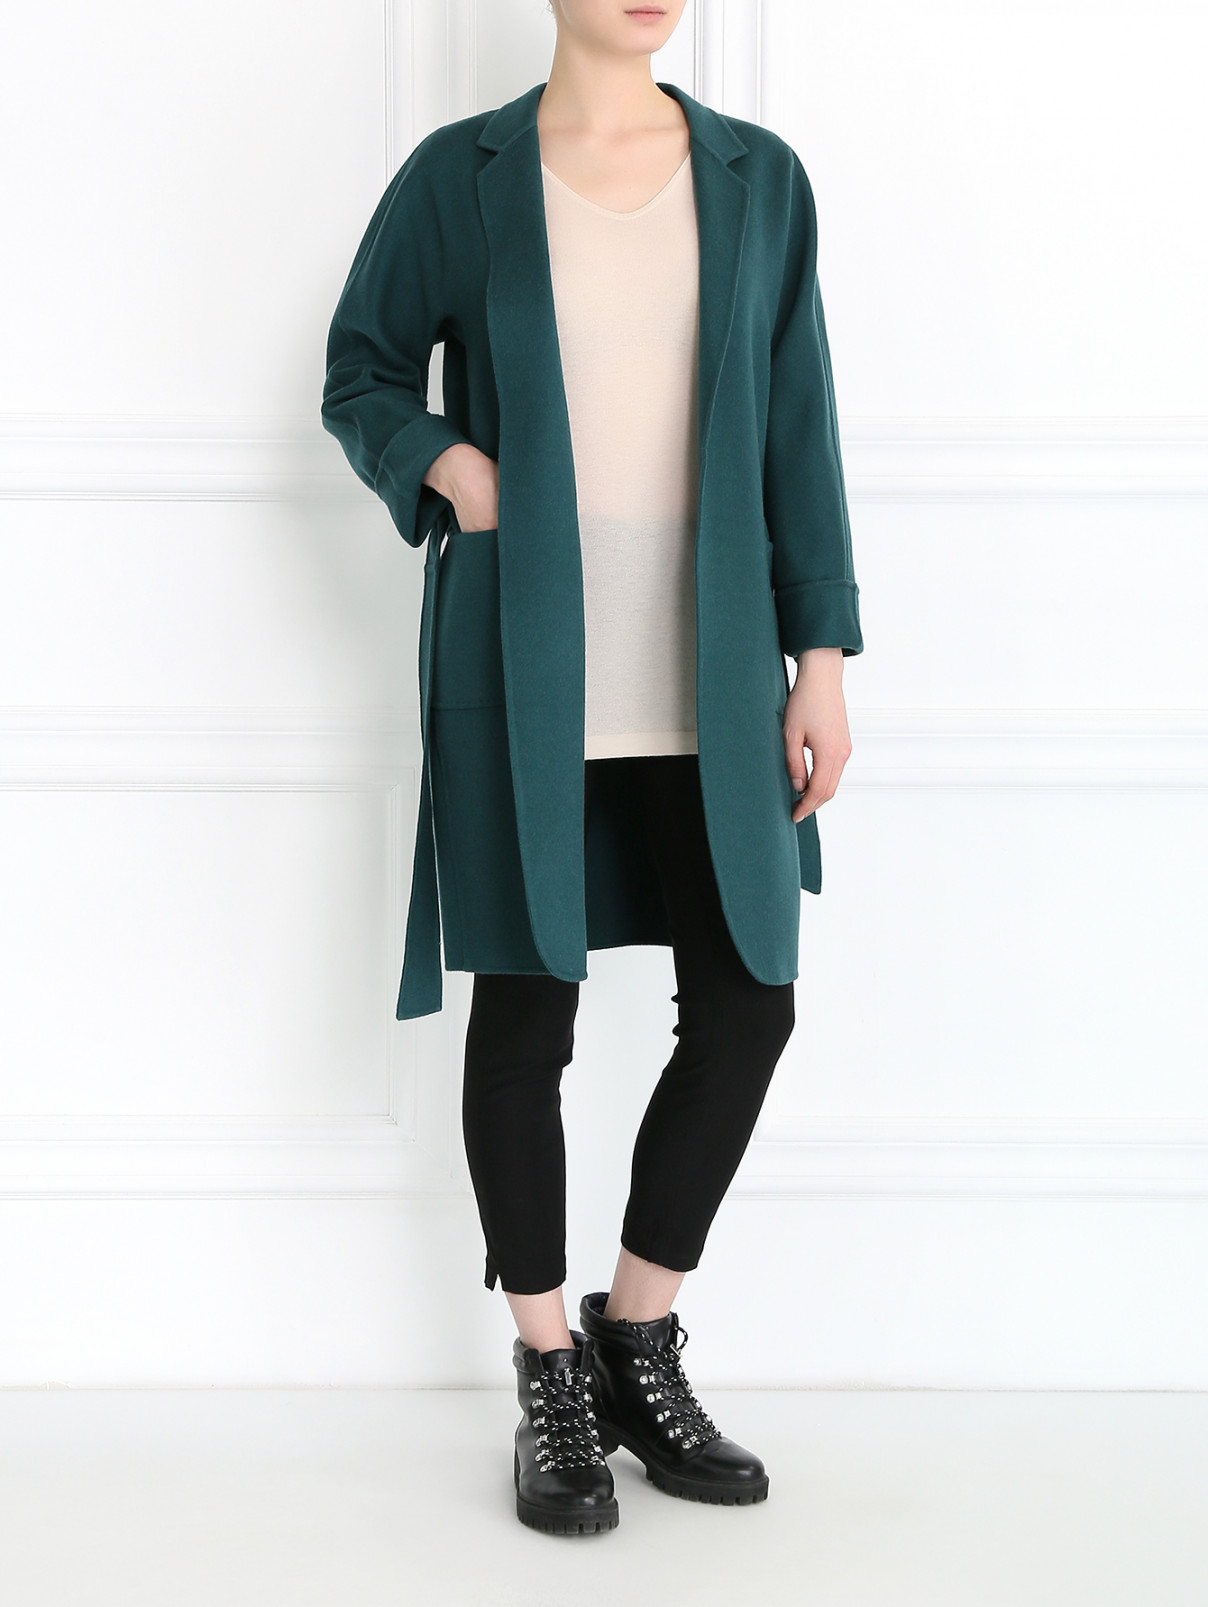 Пальто из шерсти с поясом Max Mara  –  Модель Общий вид  – Цвет:  Зеленый